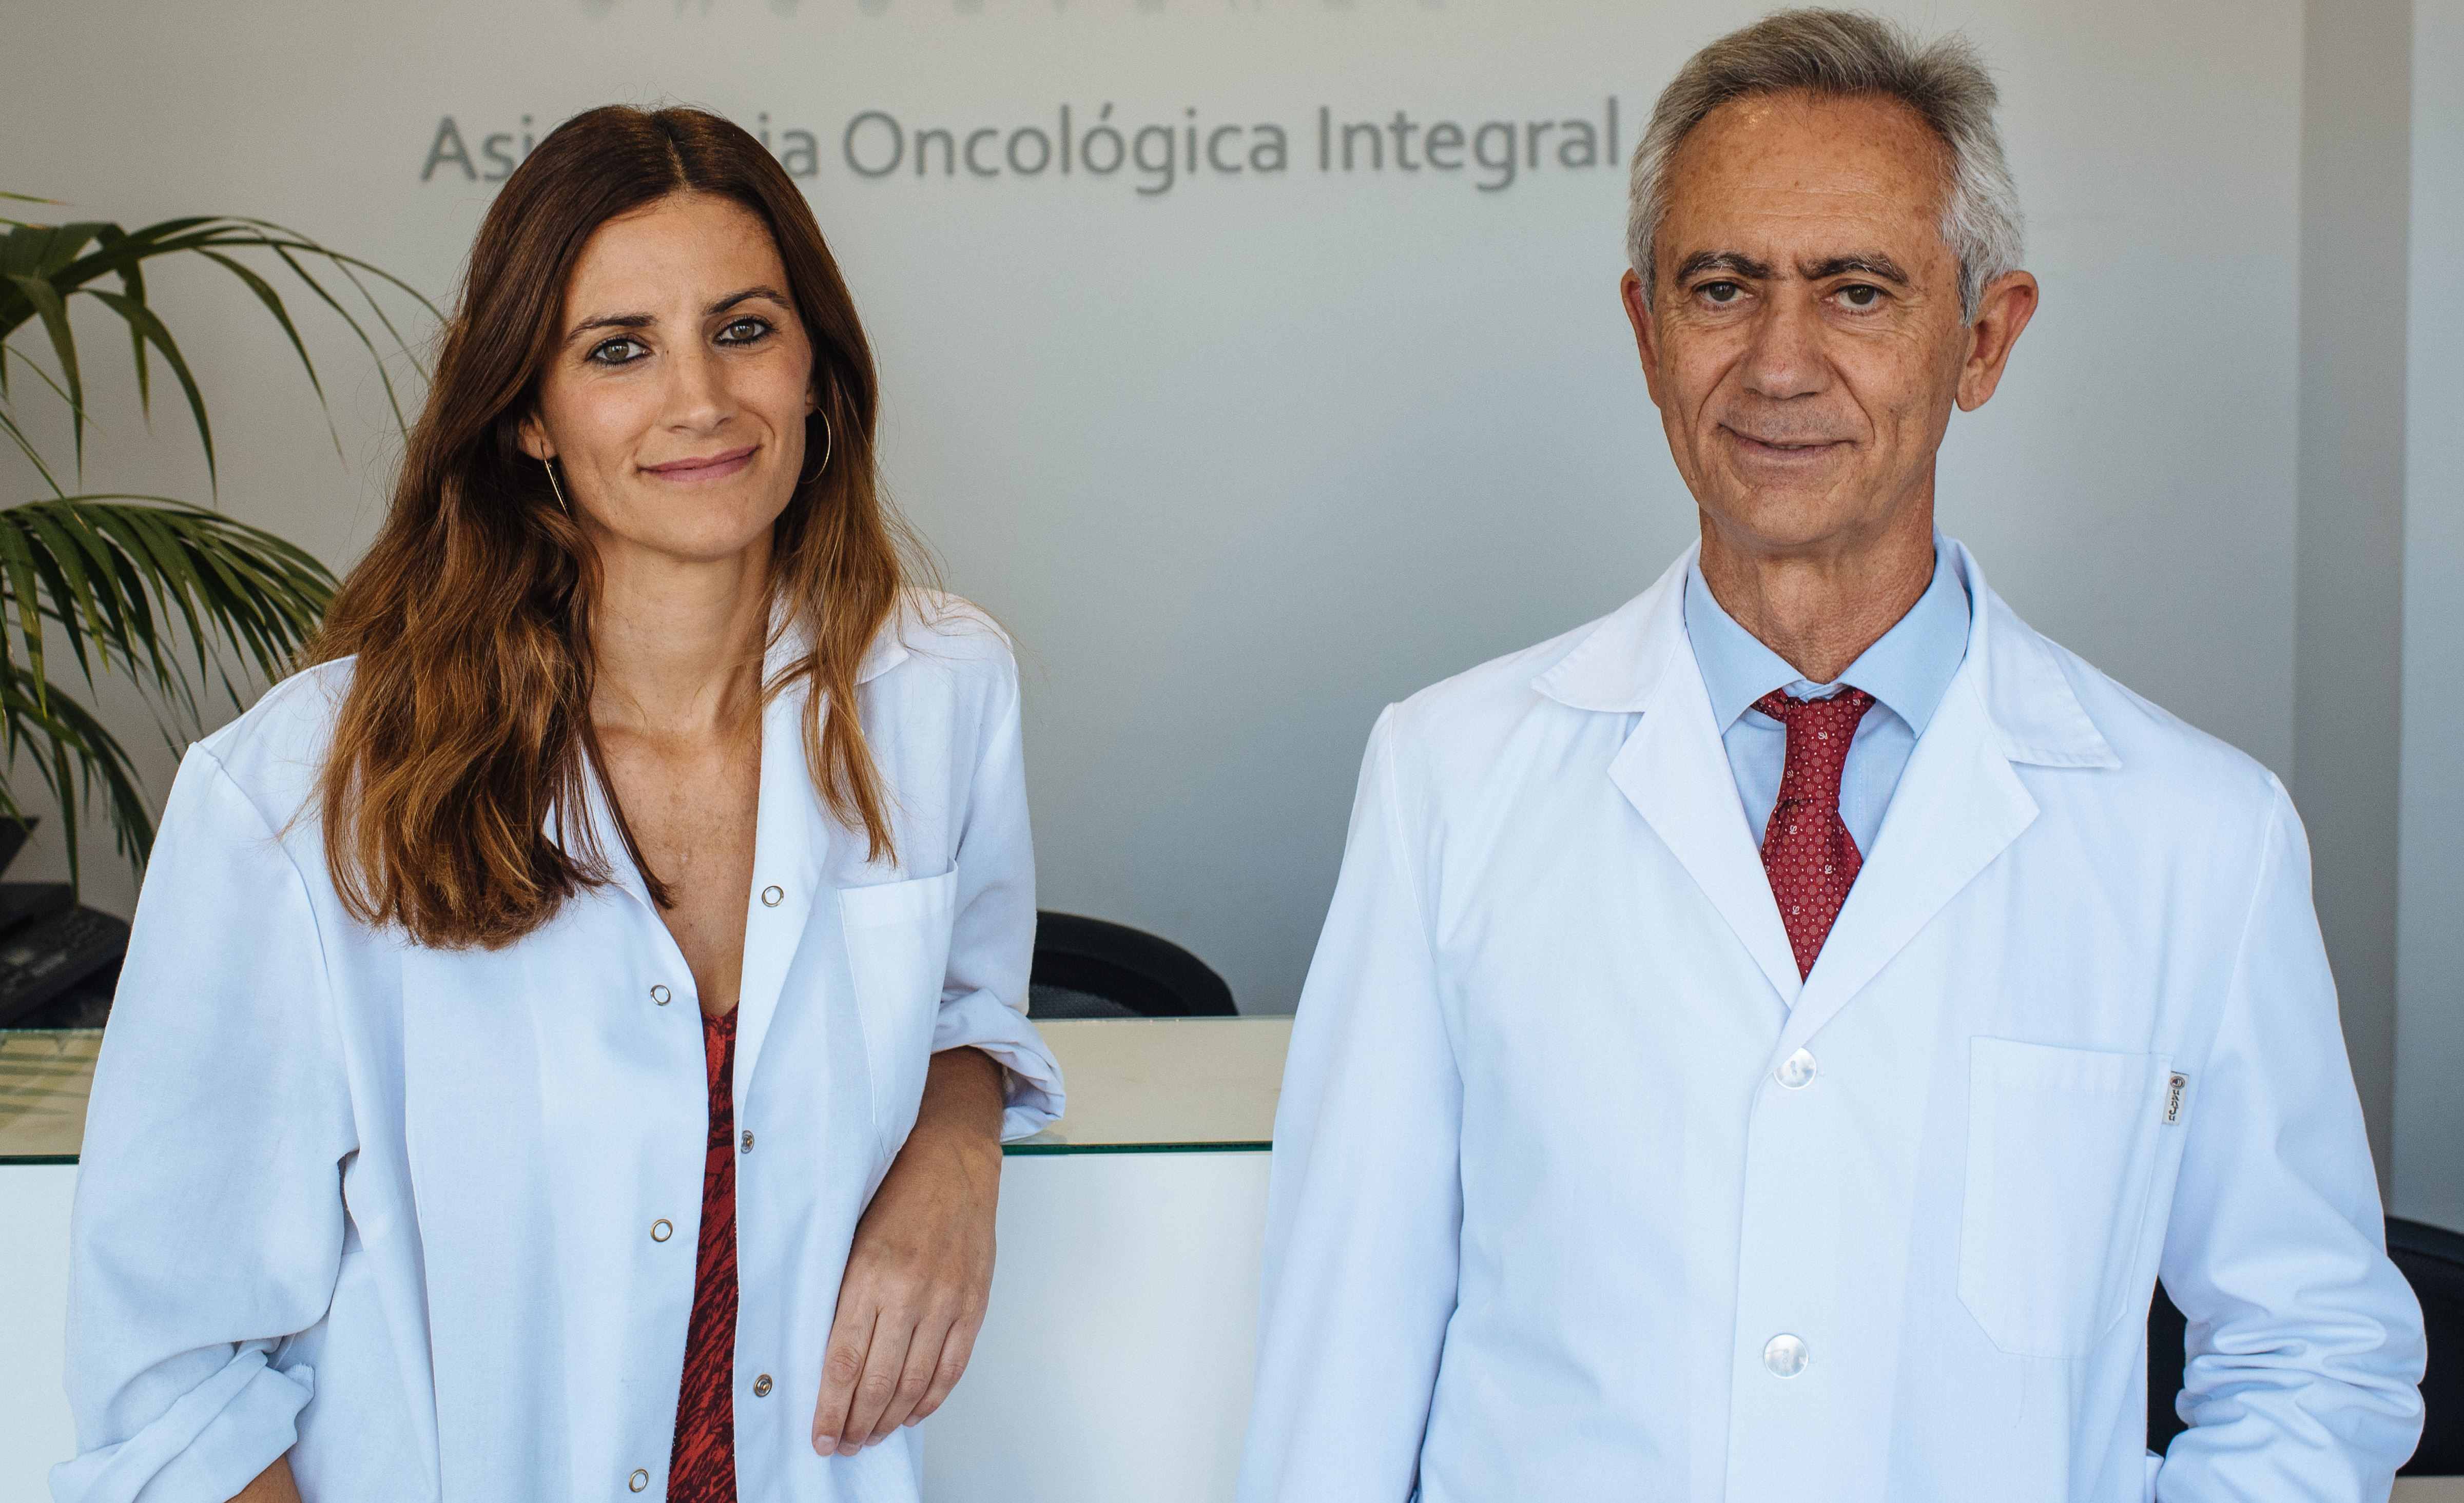 Los oncólogos  María Valero y Pedro Valero, de los hospitales Quirónsalud Sagrado Corazón e Infanta Luisa de Sevilla